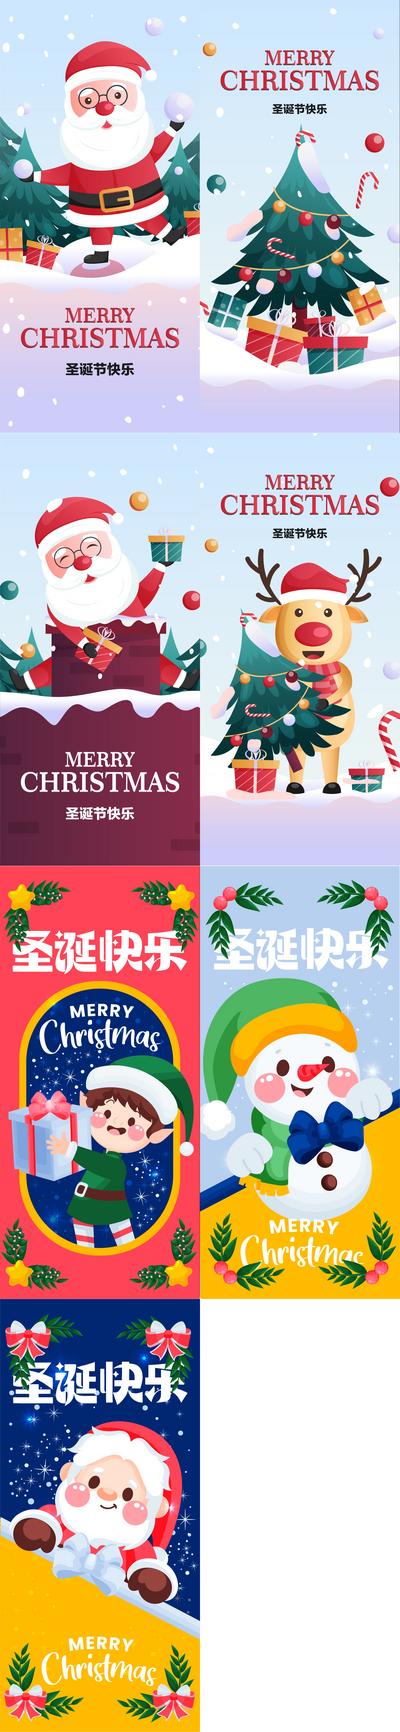 南门网 广告 海报 合集 圣诞节 圣诞老人 麋鹿 圣诞树 冬天 下雪